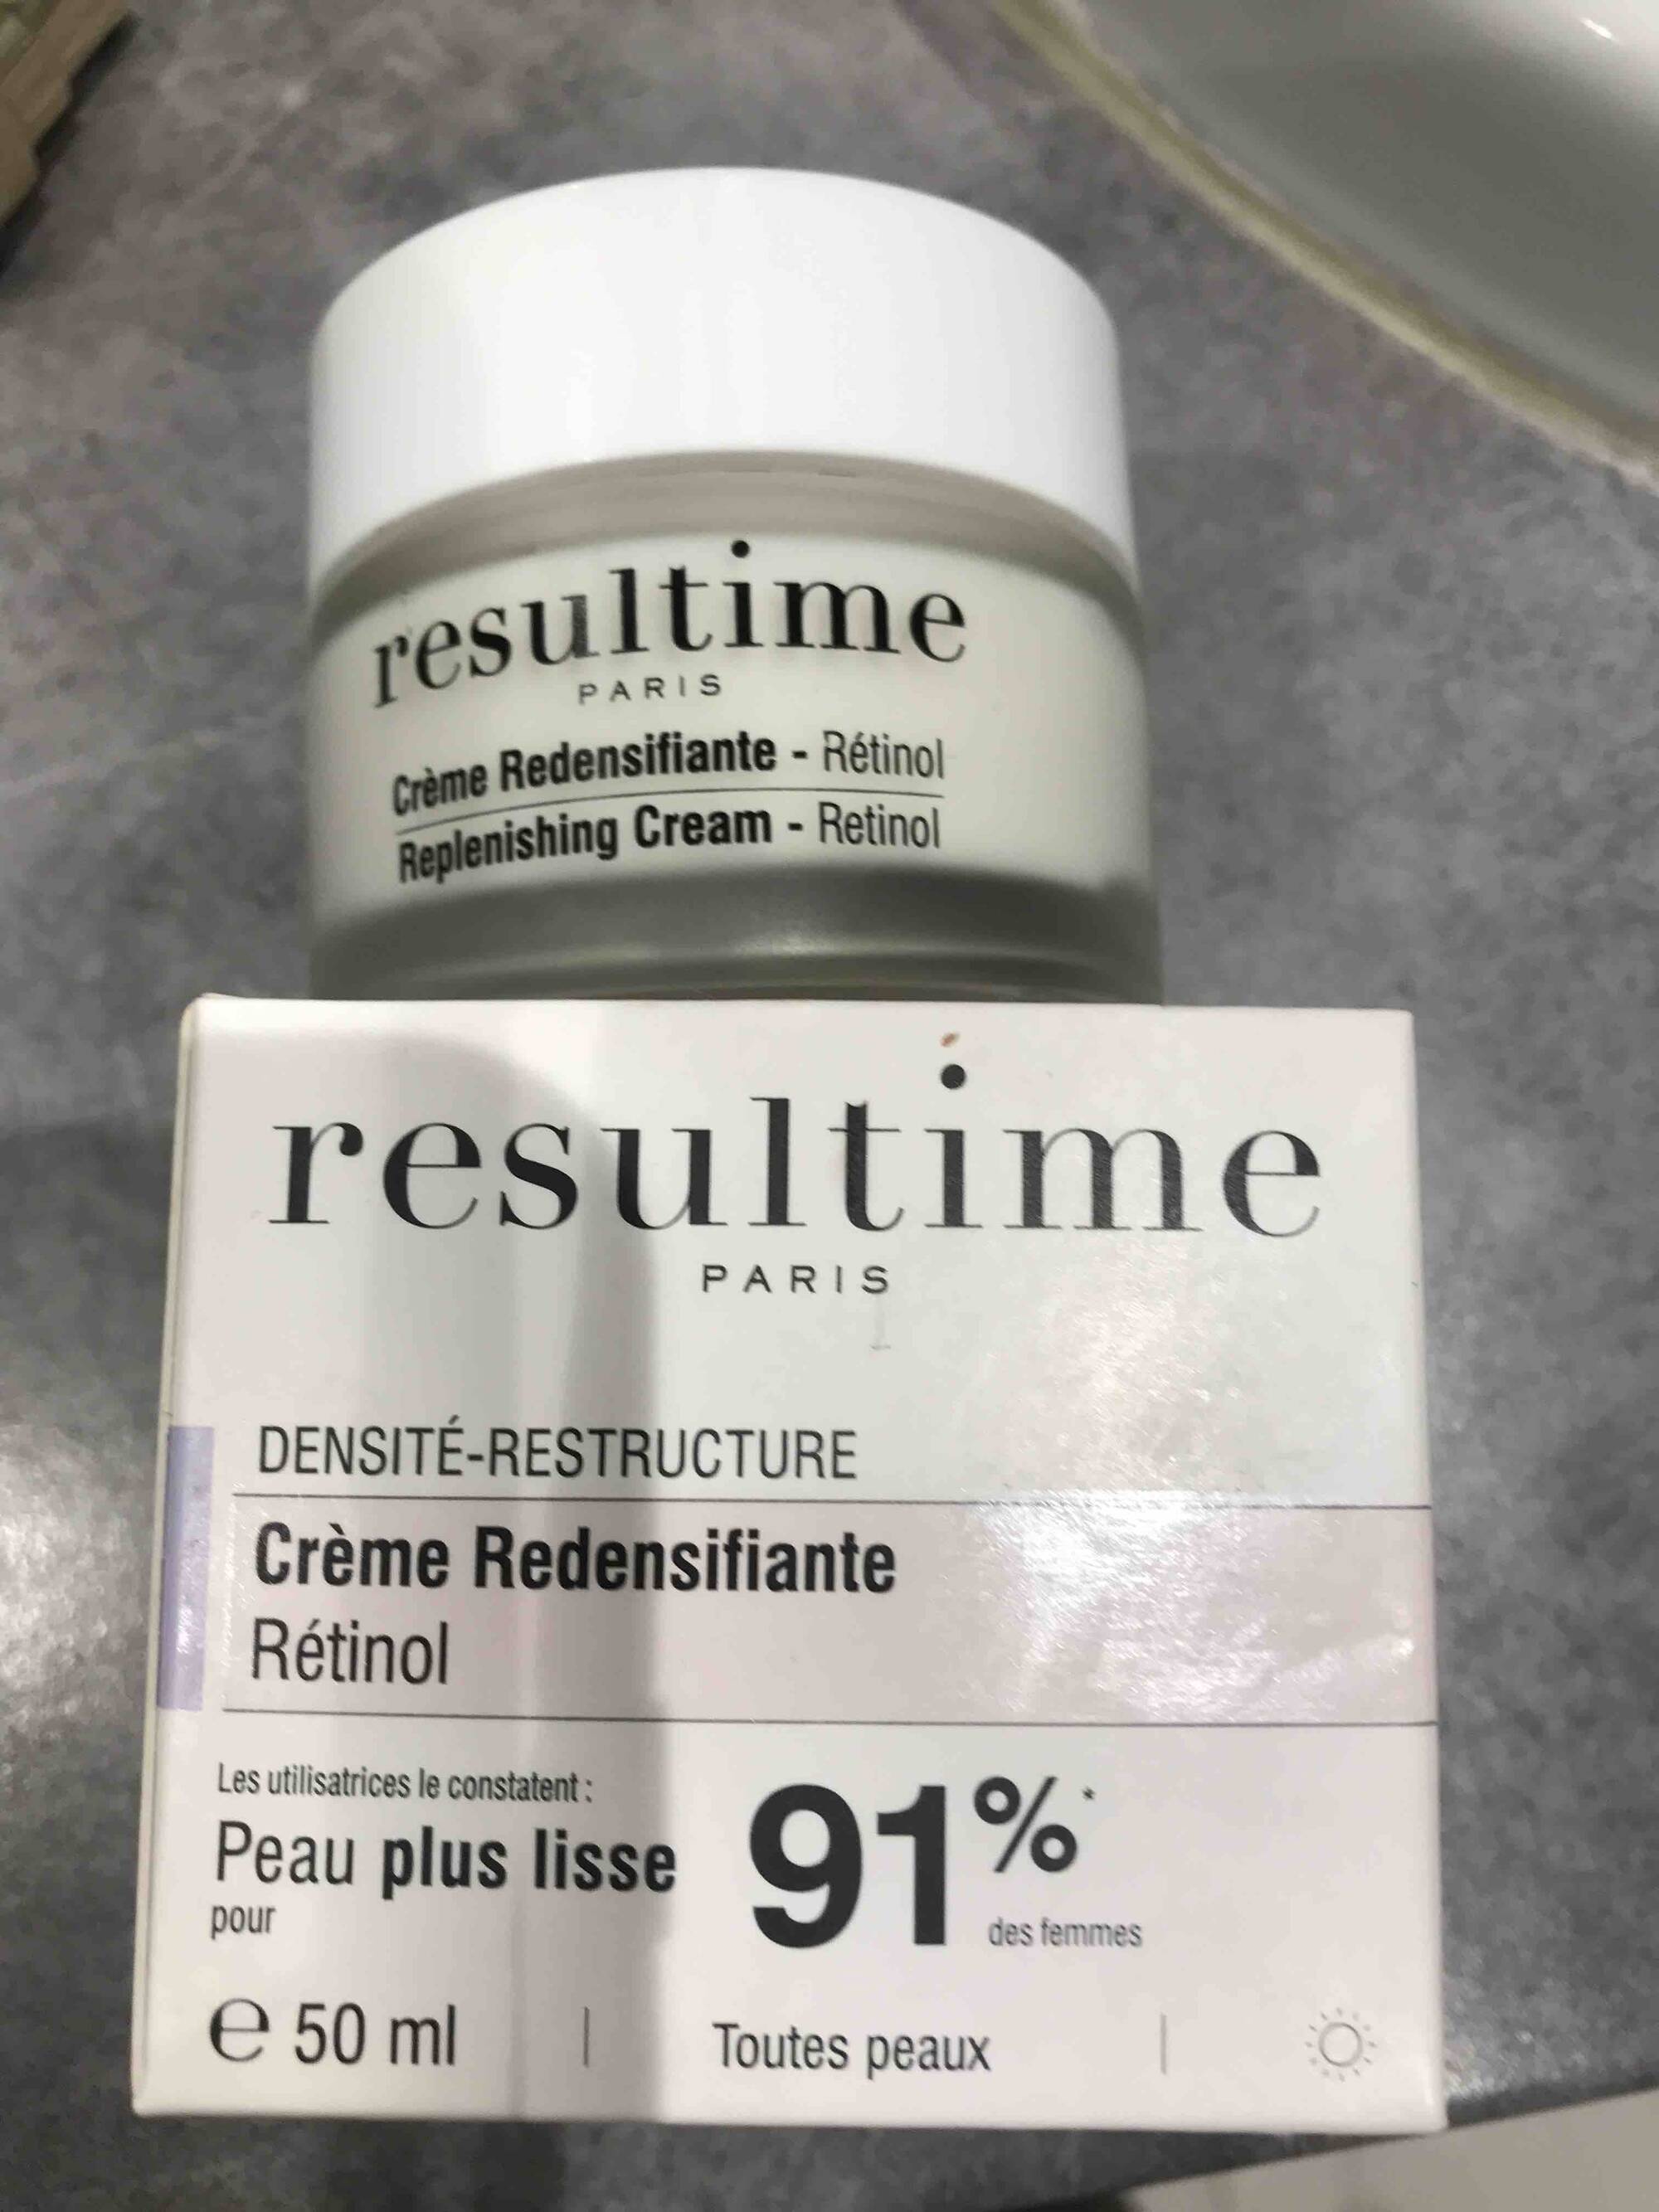 RESULTIME - Crème redensifiante rétinol peau plus lisse